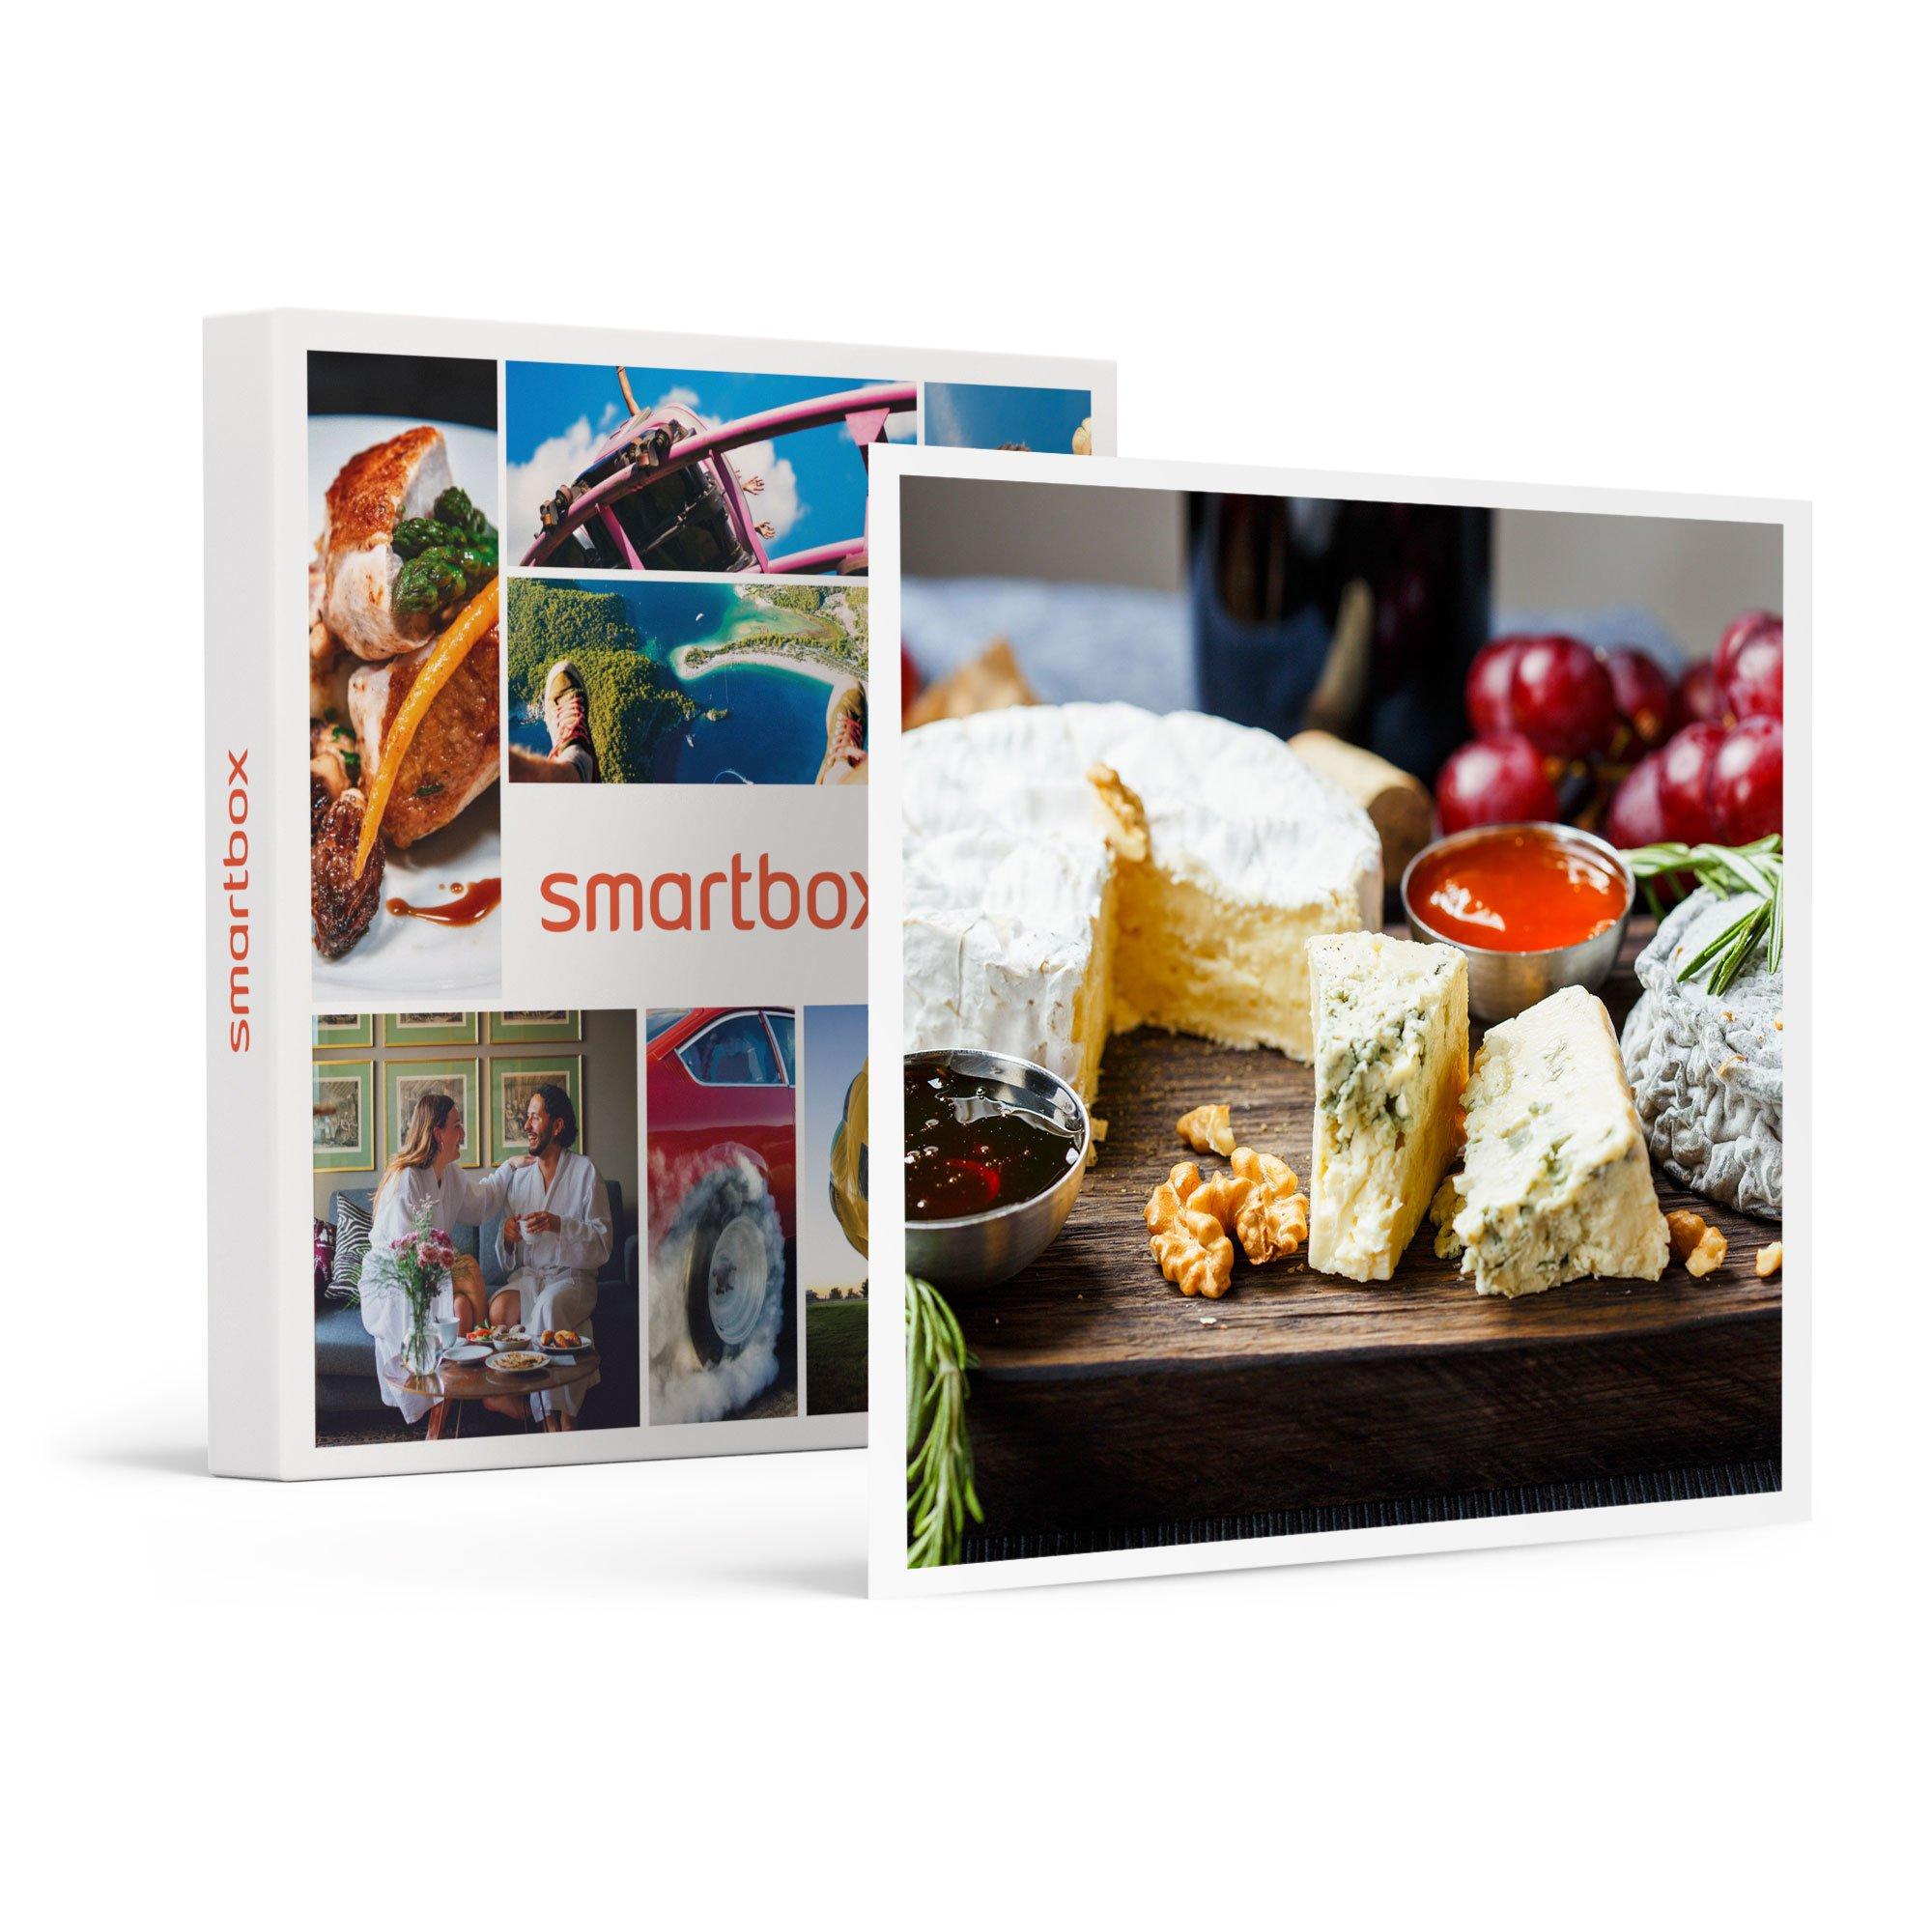 Panier de produits artisanaux à déguster à domicile - Smartbox